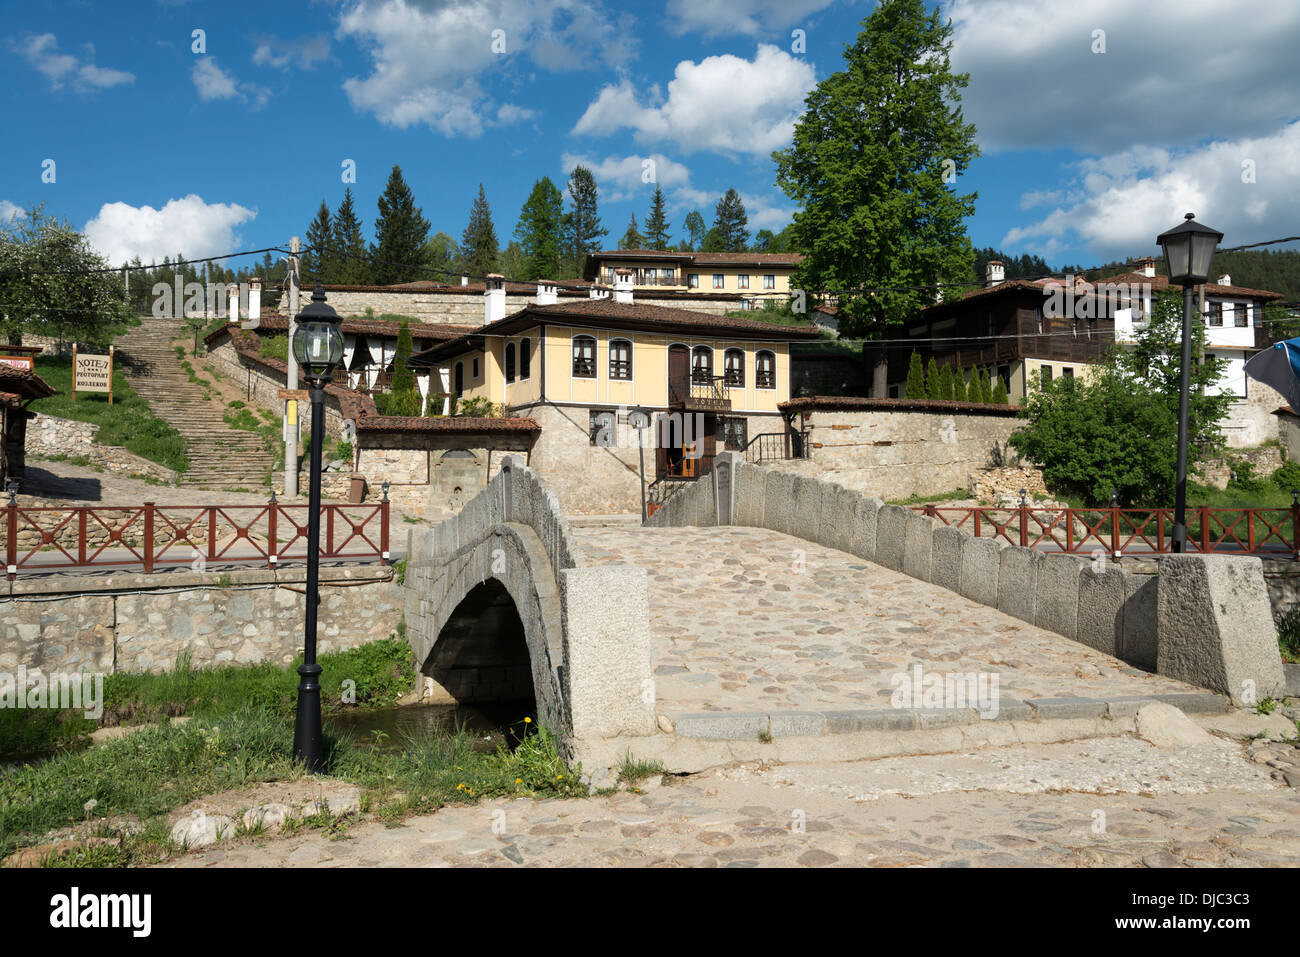 Fußgängerbrücke über den Topolnitsa River in Koprivshtitsa, Bulgarien Stockfoto